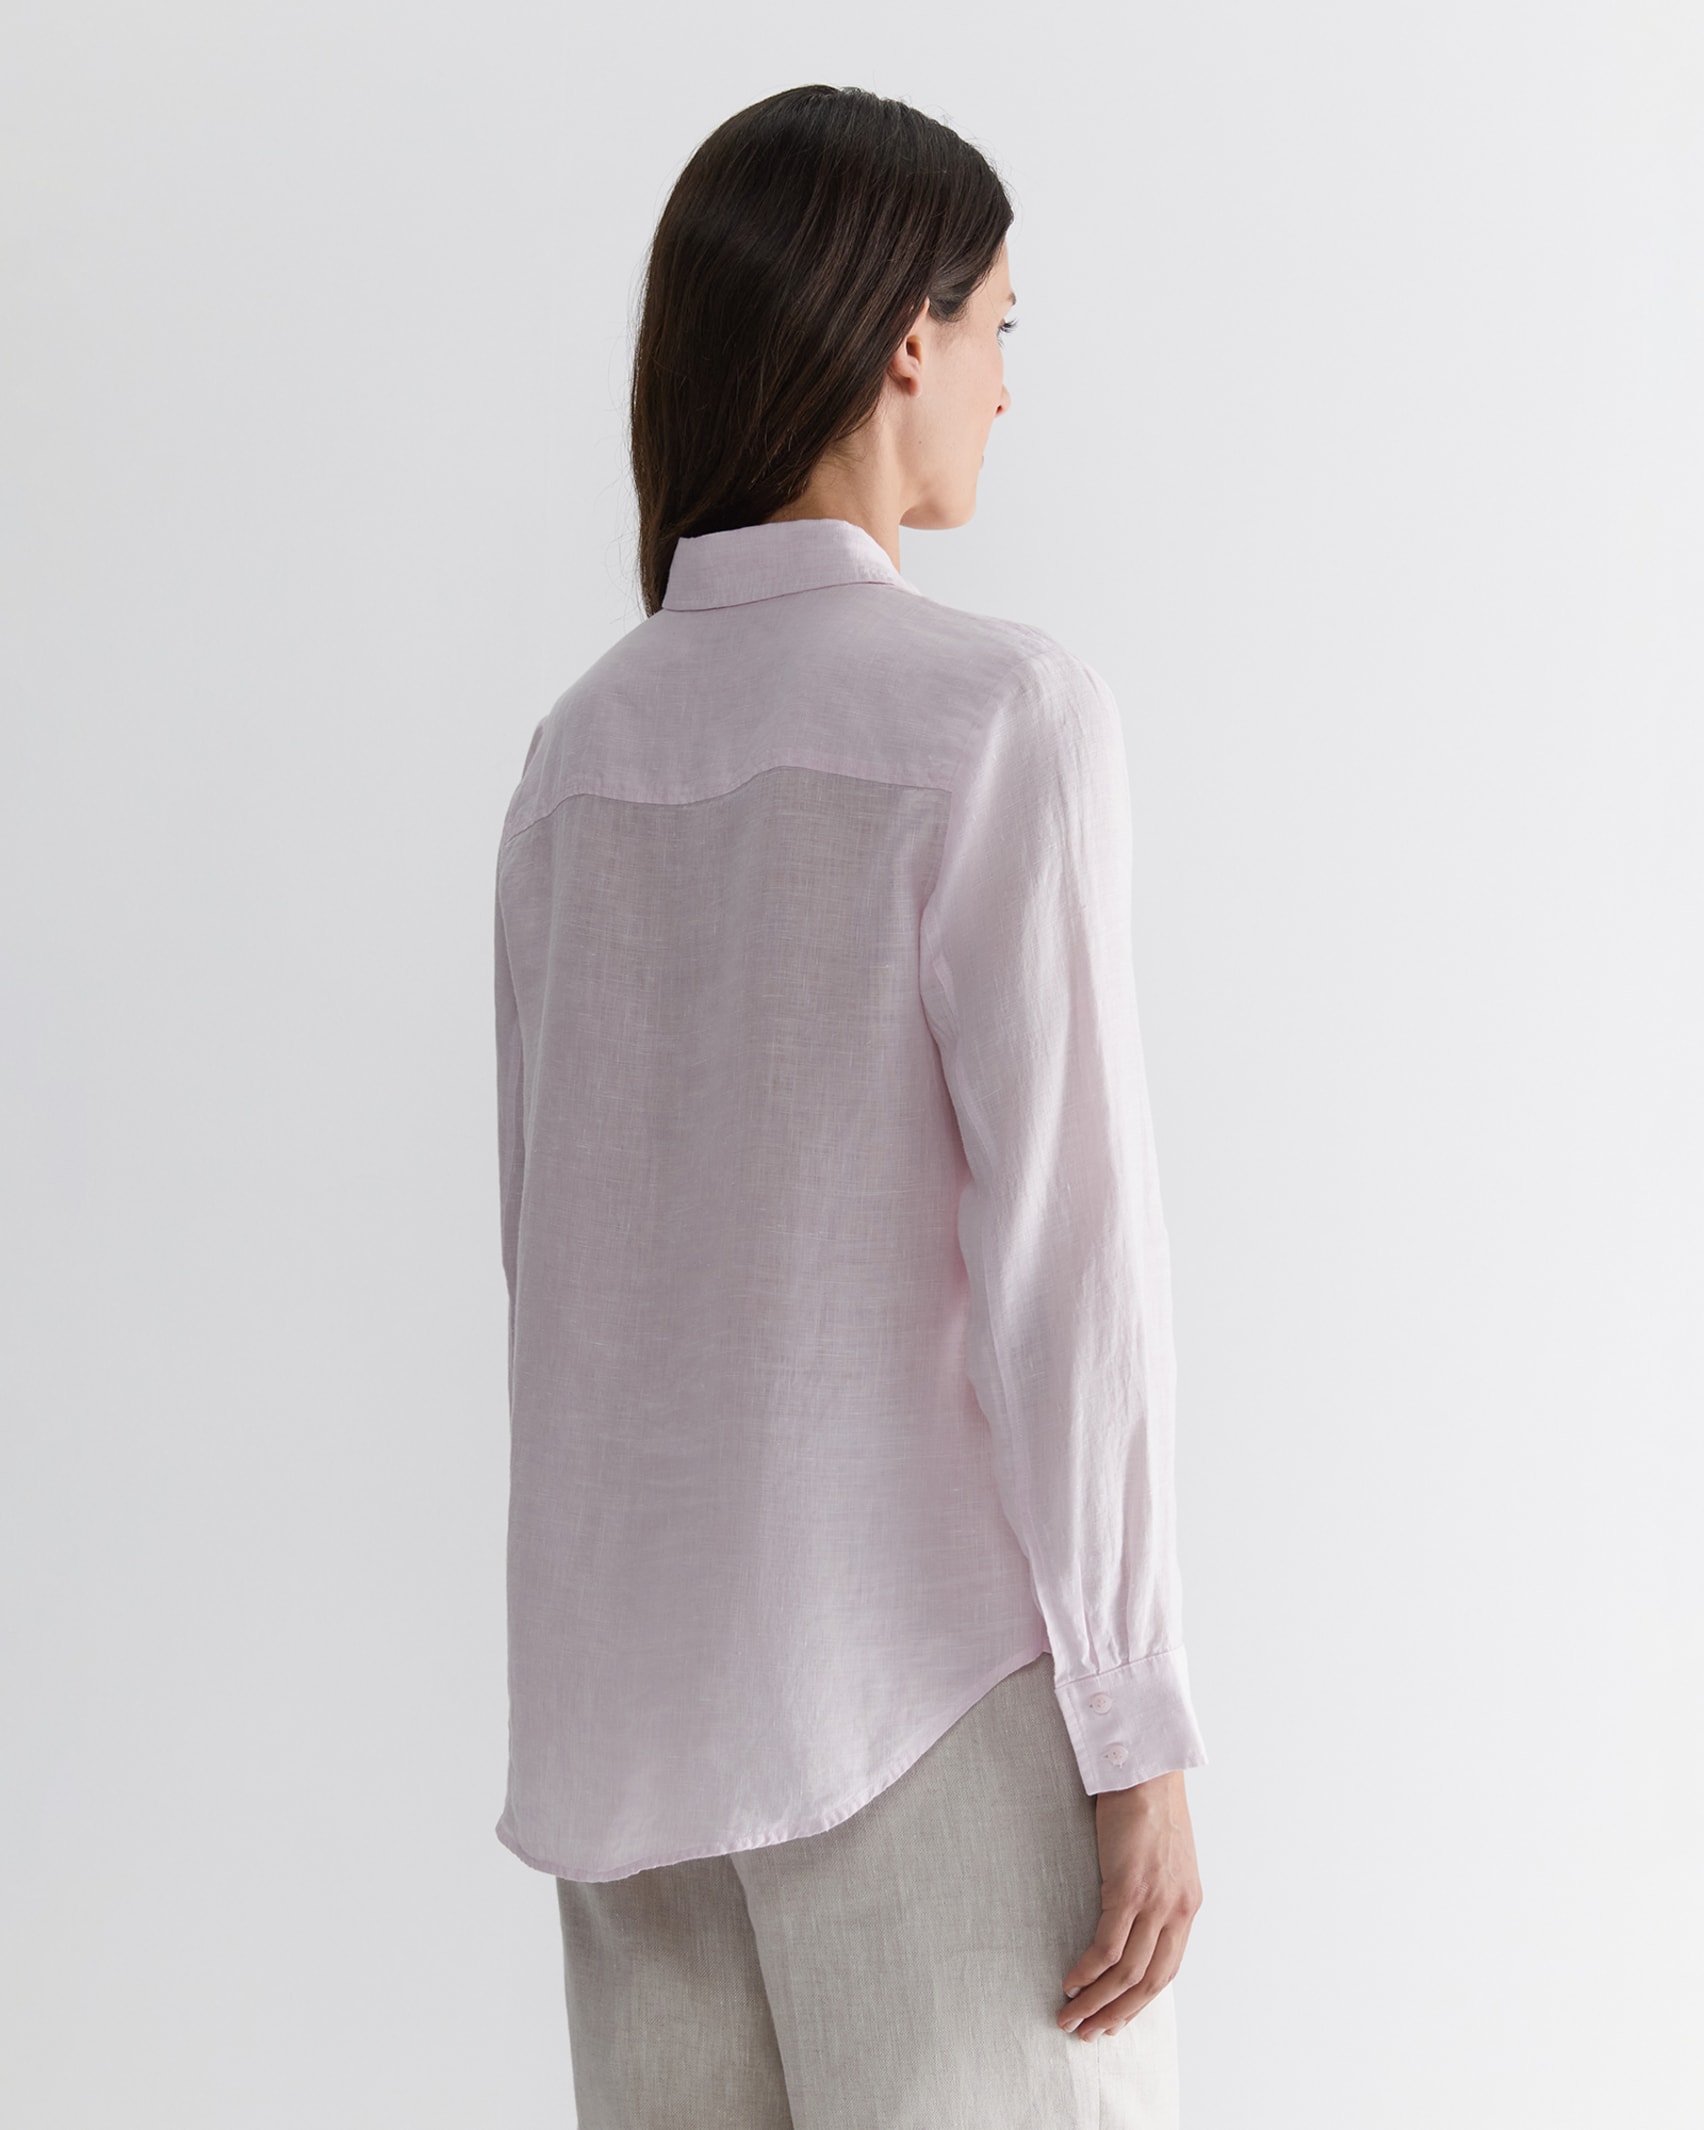 Dahlia Linen Shirt in PINK